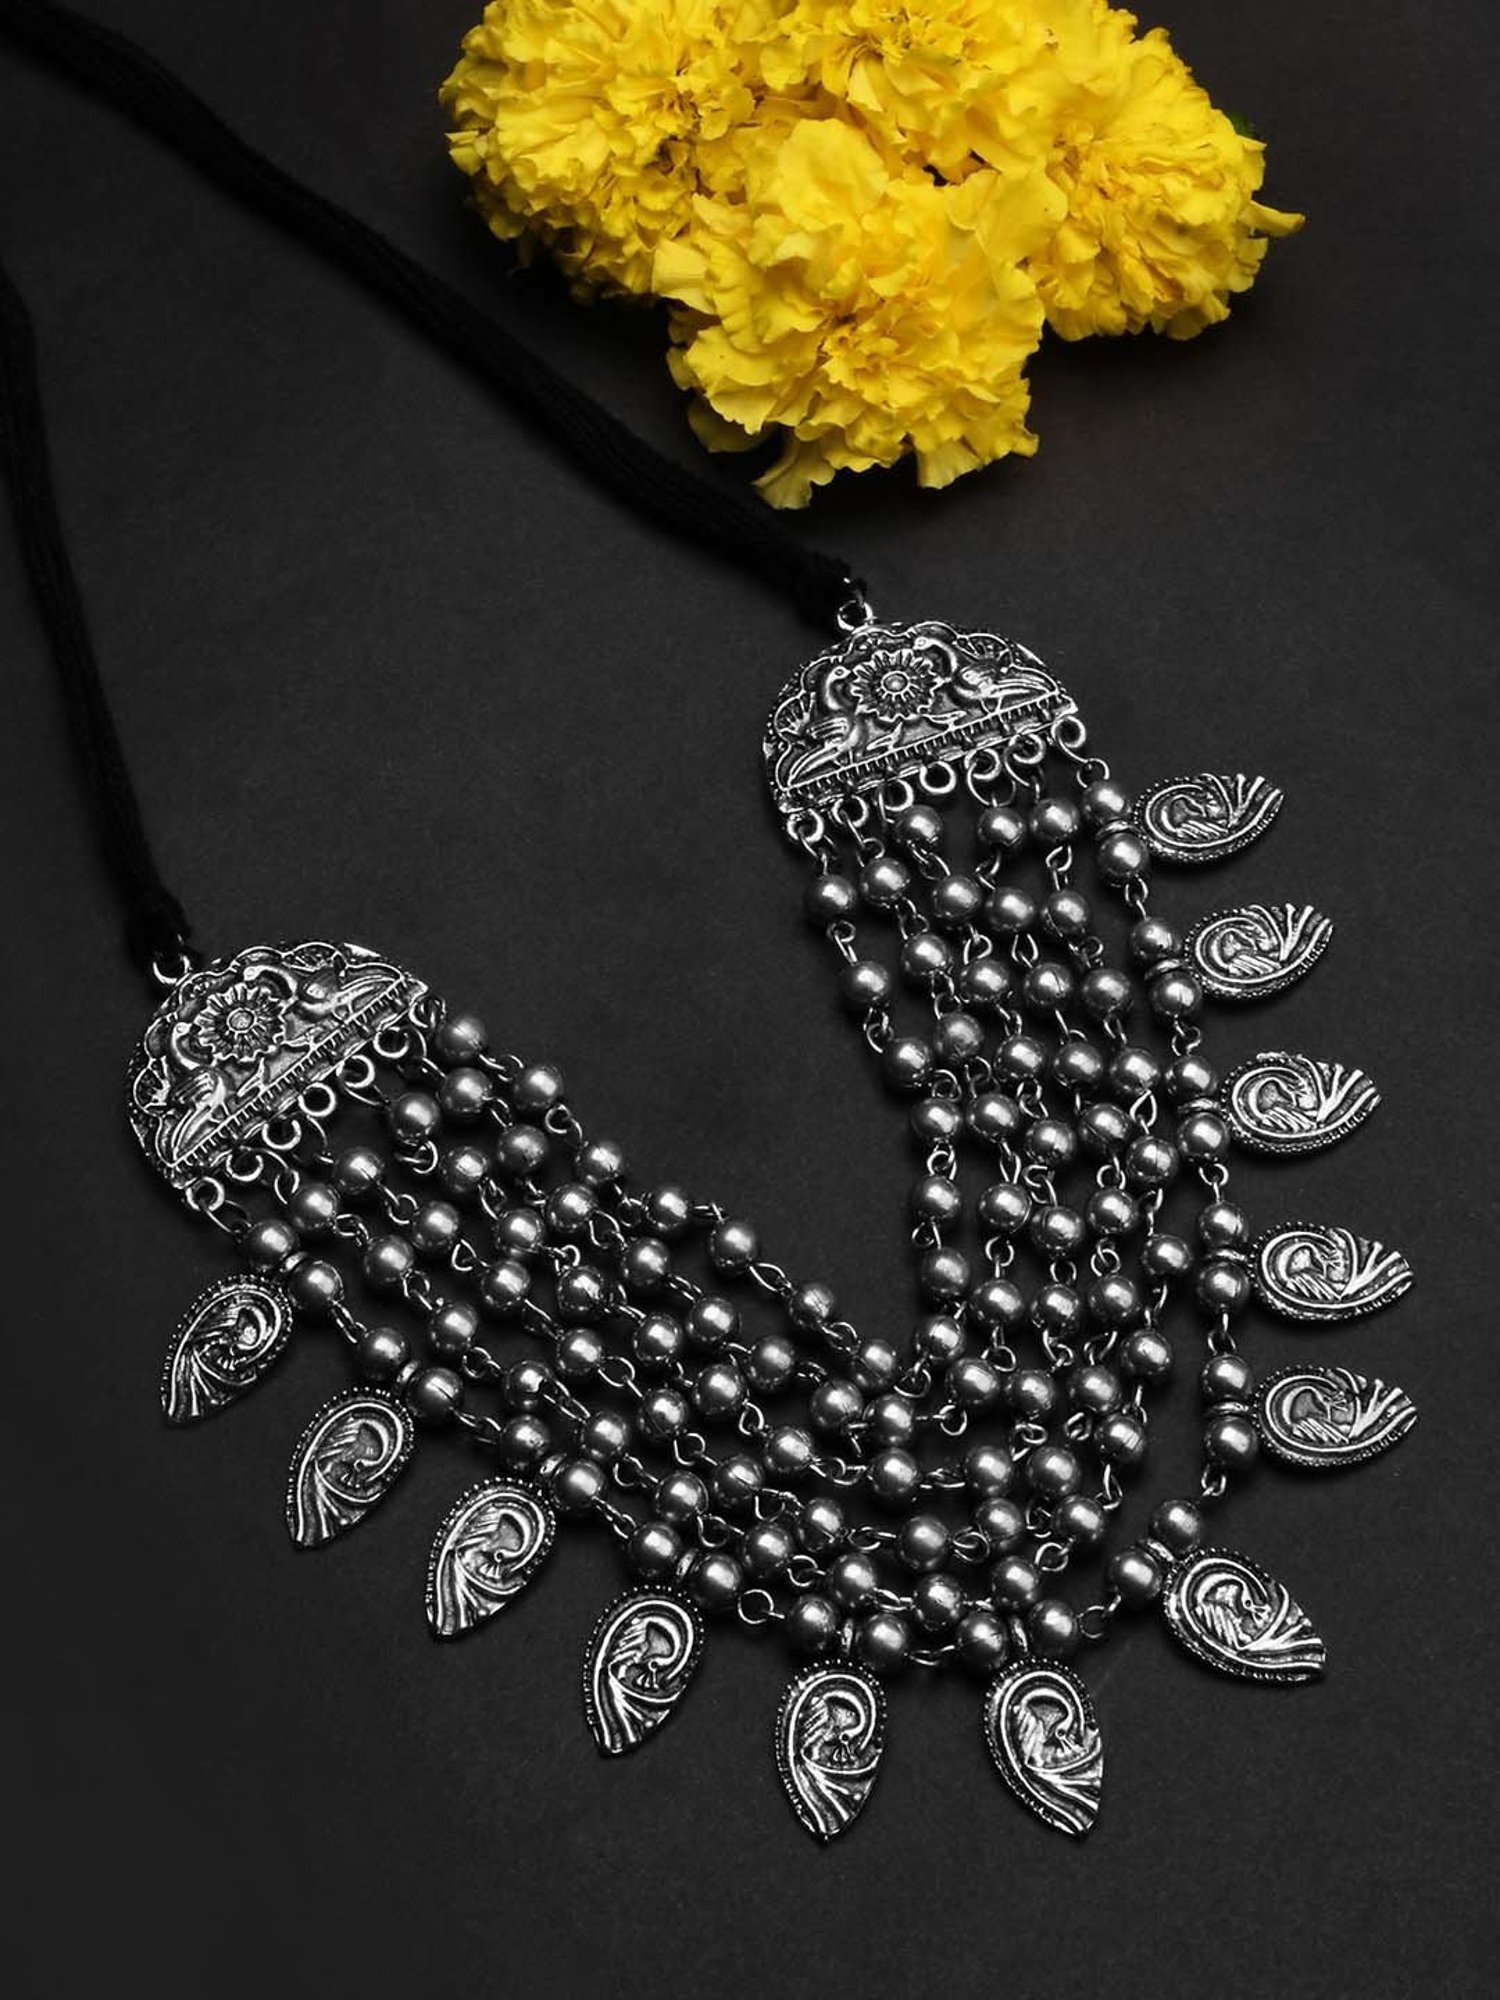 Surya kemp necklace | Indian saree blouses designs, Fashionable saree blouse  designs, Saree jewellery